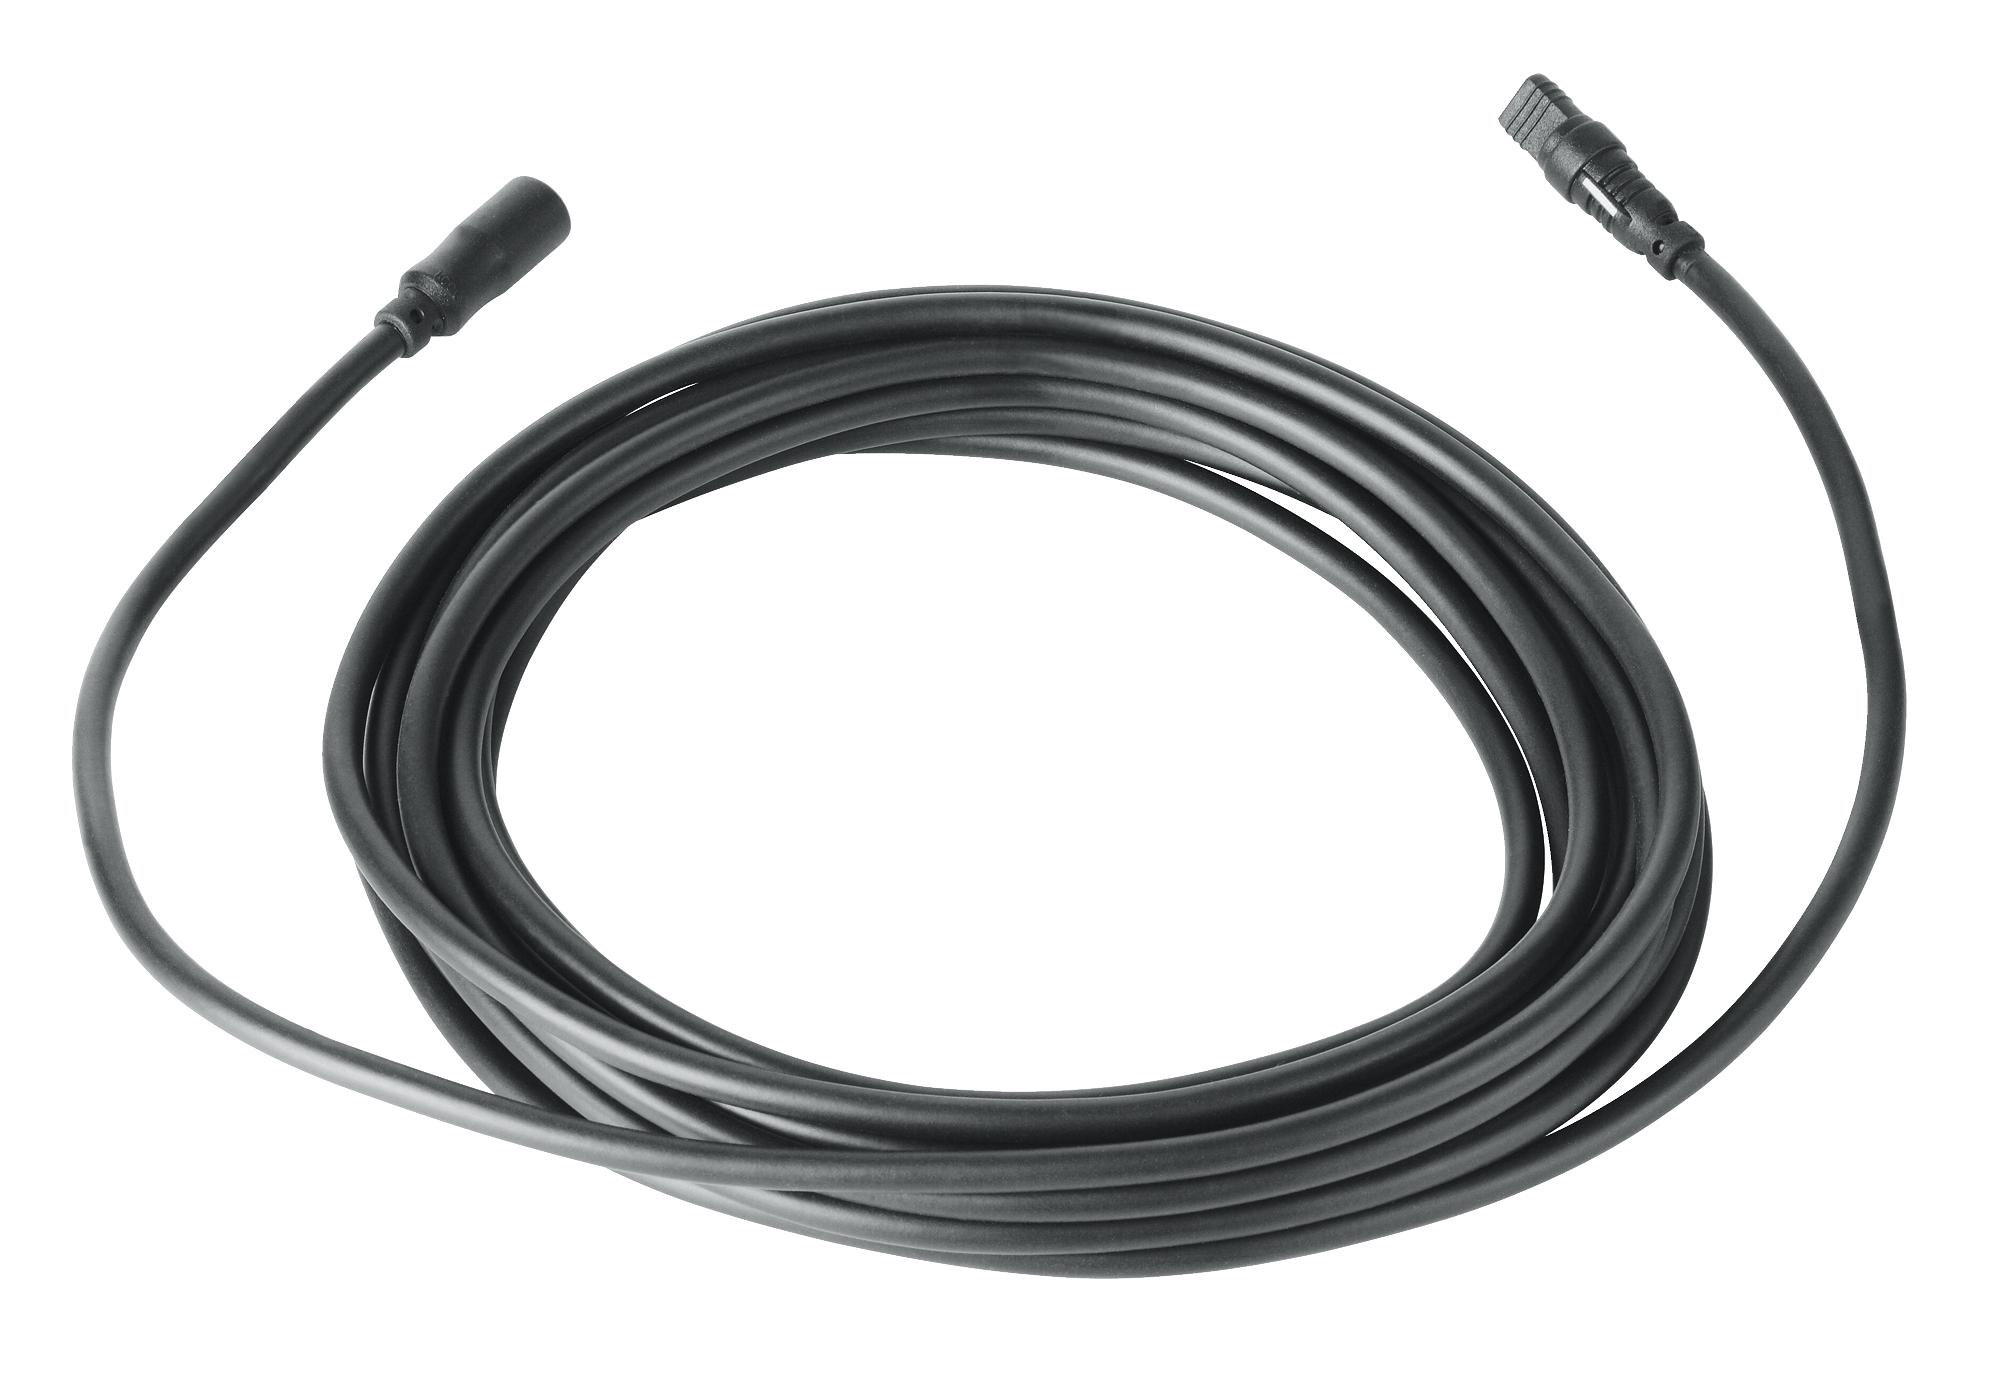 

Удлинительный кабель для генератора пара (5 м) GROHE F-digital deluxe (47837000), Хром, 47837000